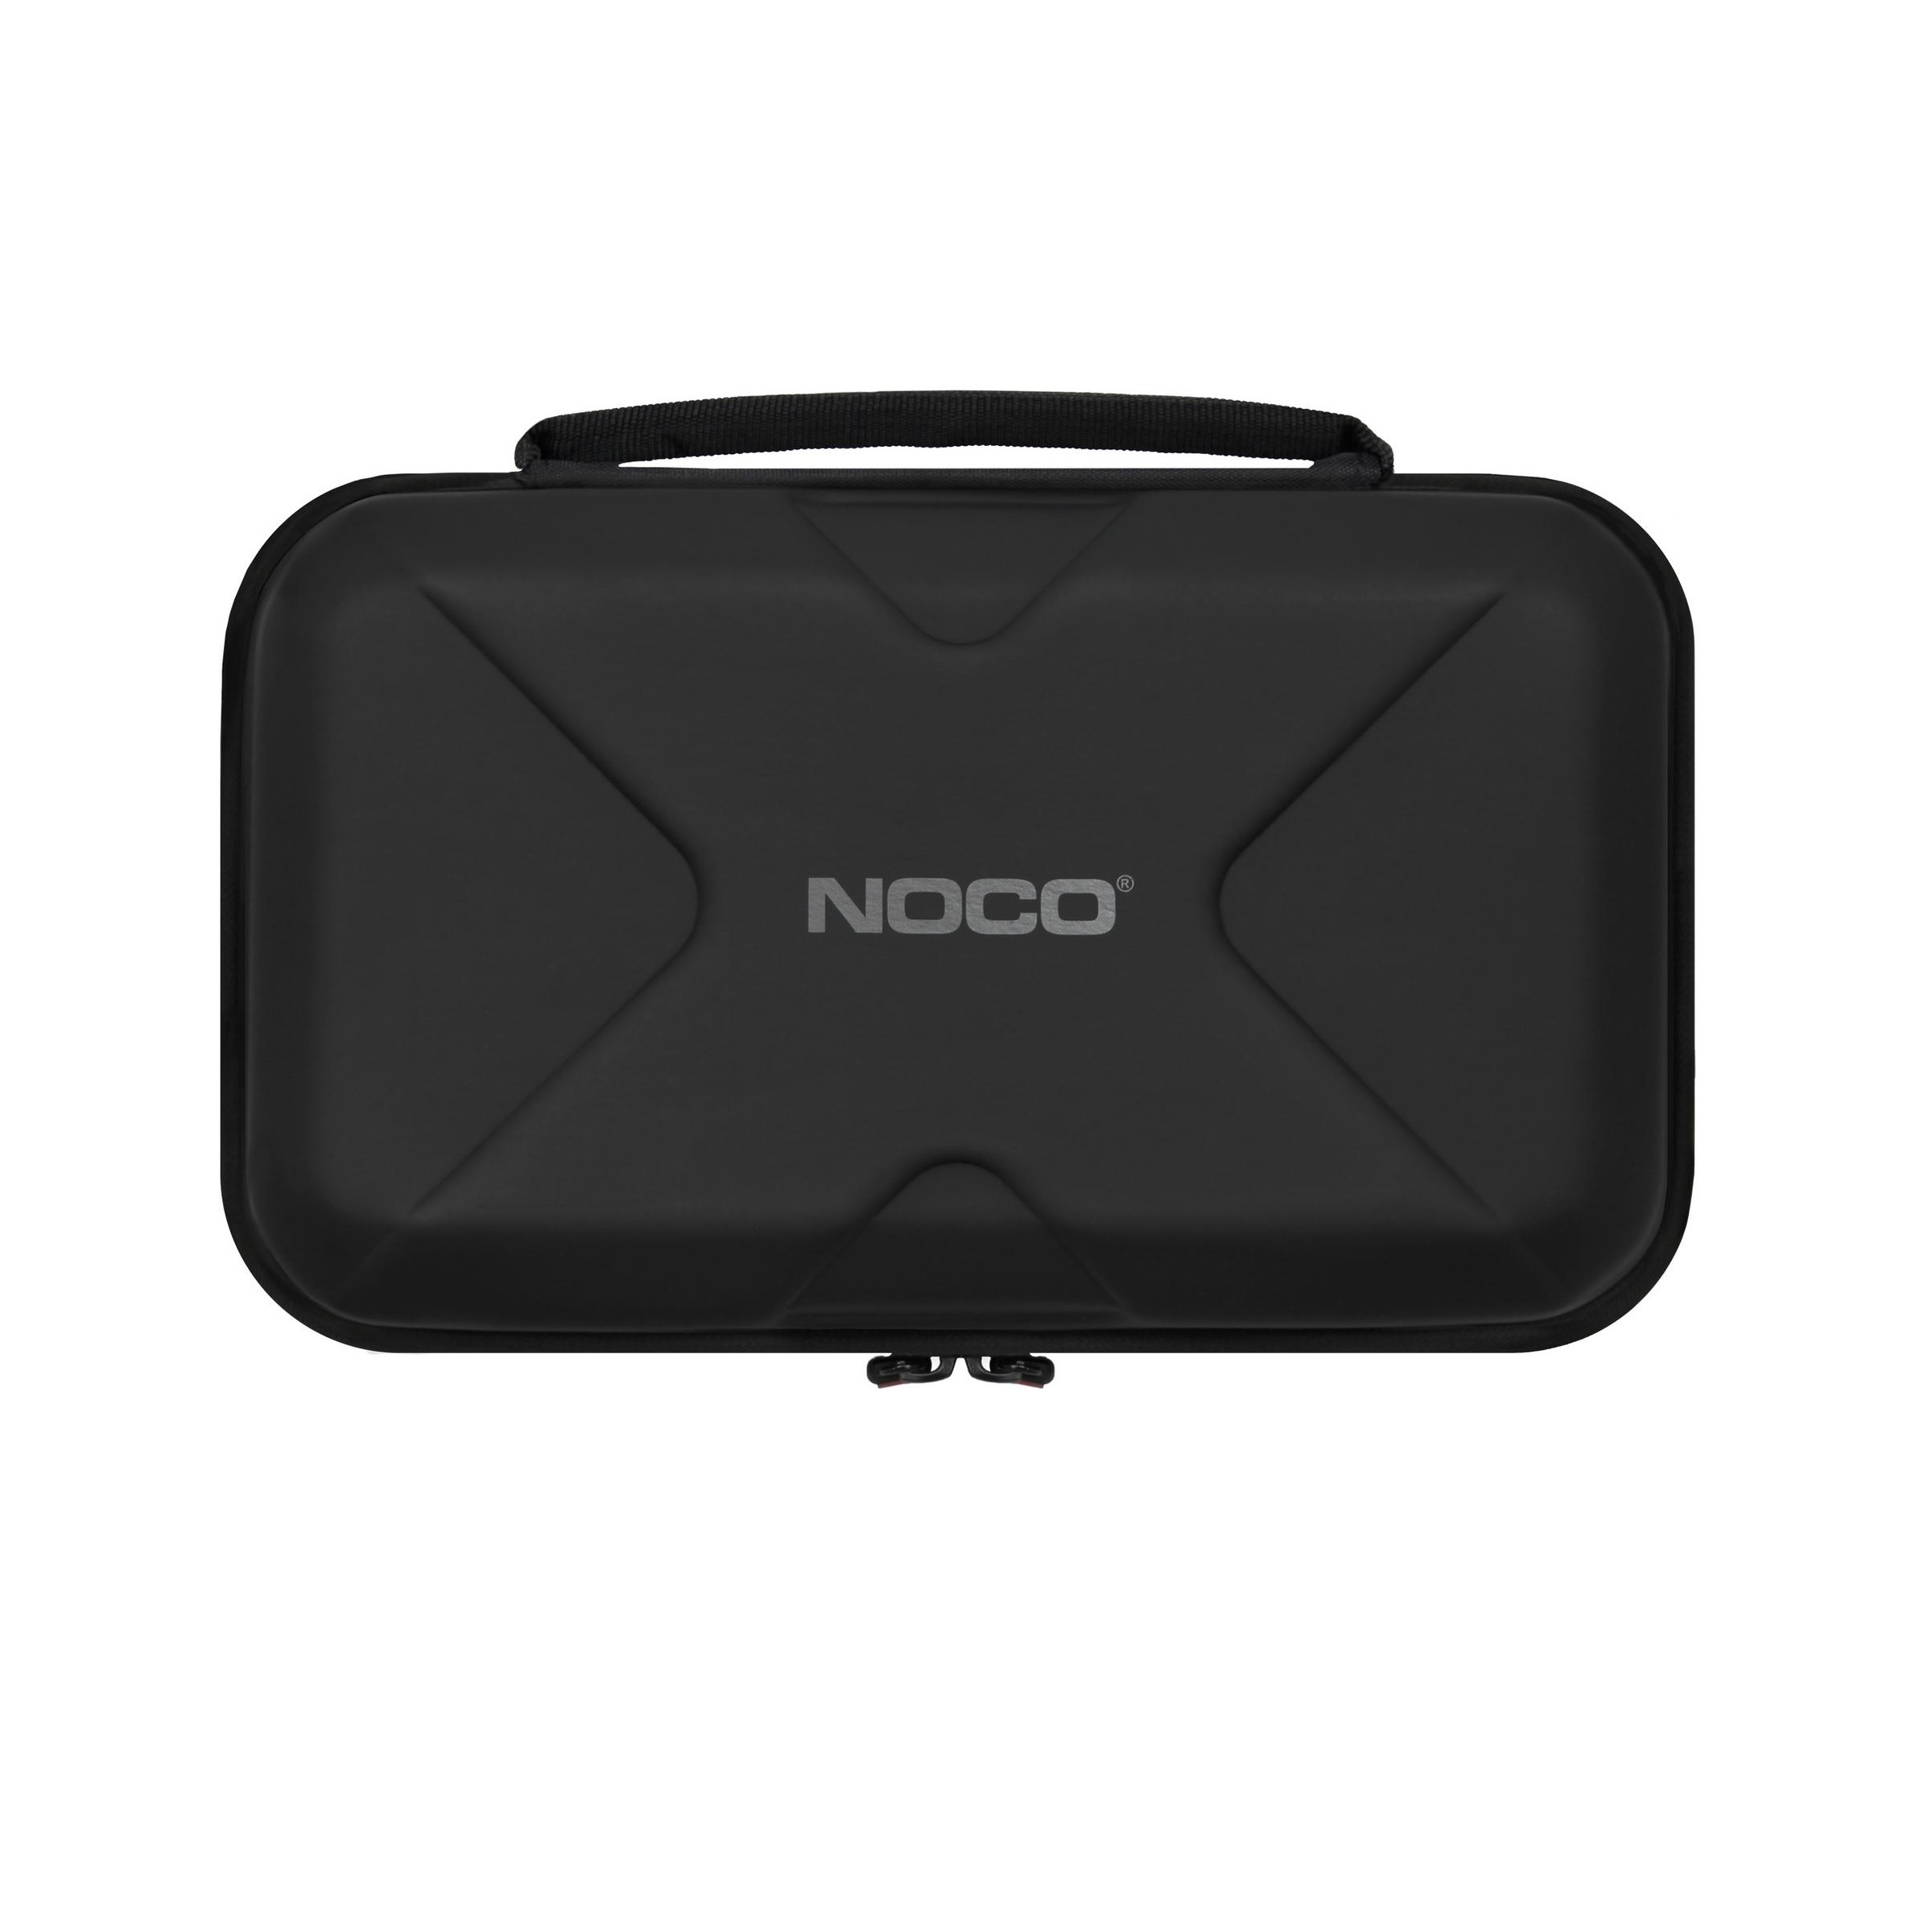 NOCO GBC014 iekārtas GB70 aizsargsoma